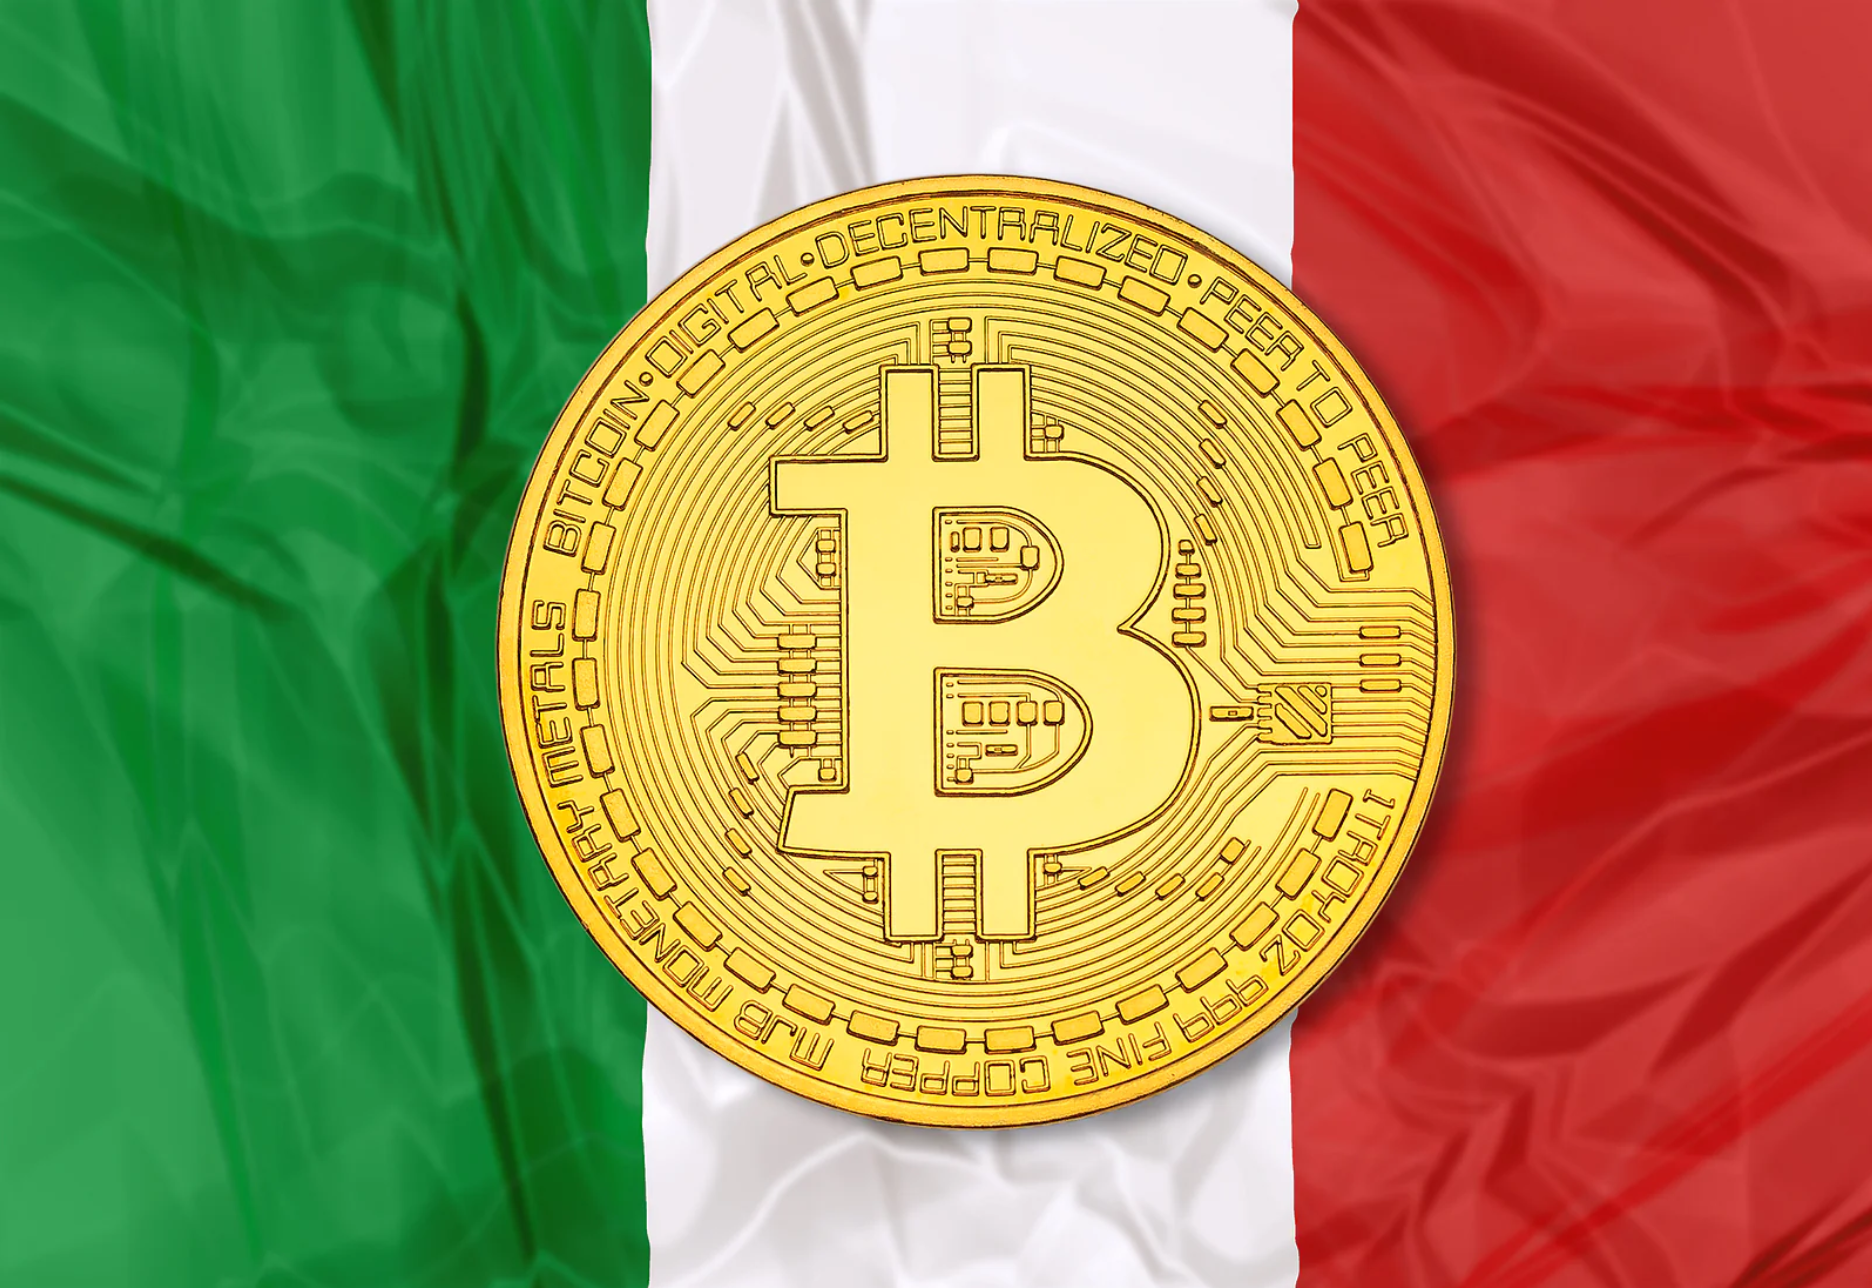 Italy Bitcoin Betting